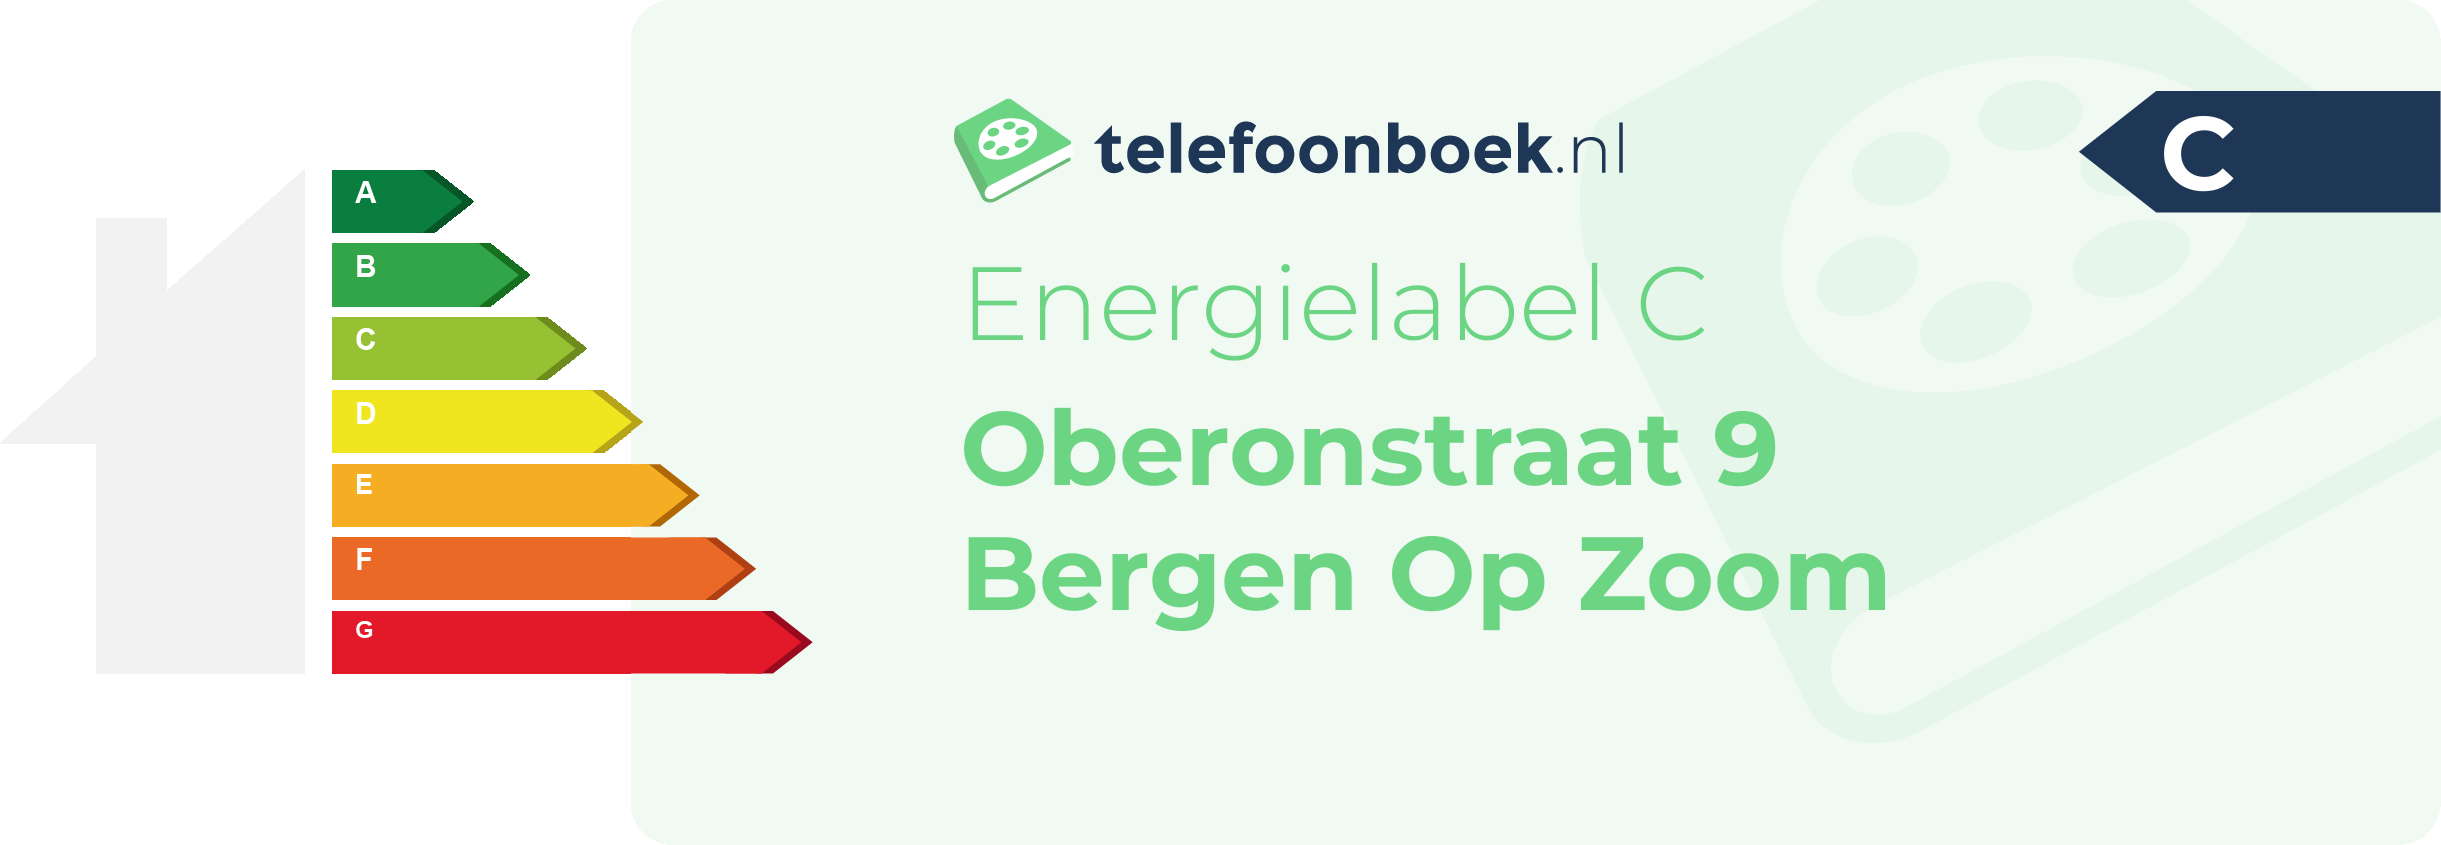 Energielabel Oberonstraat 9 Bergen Op Zoom